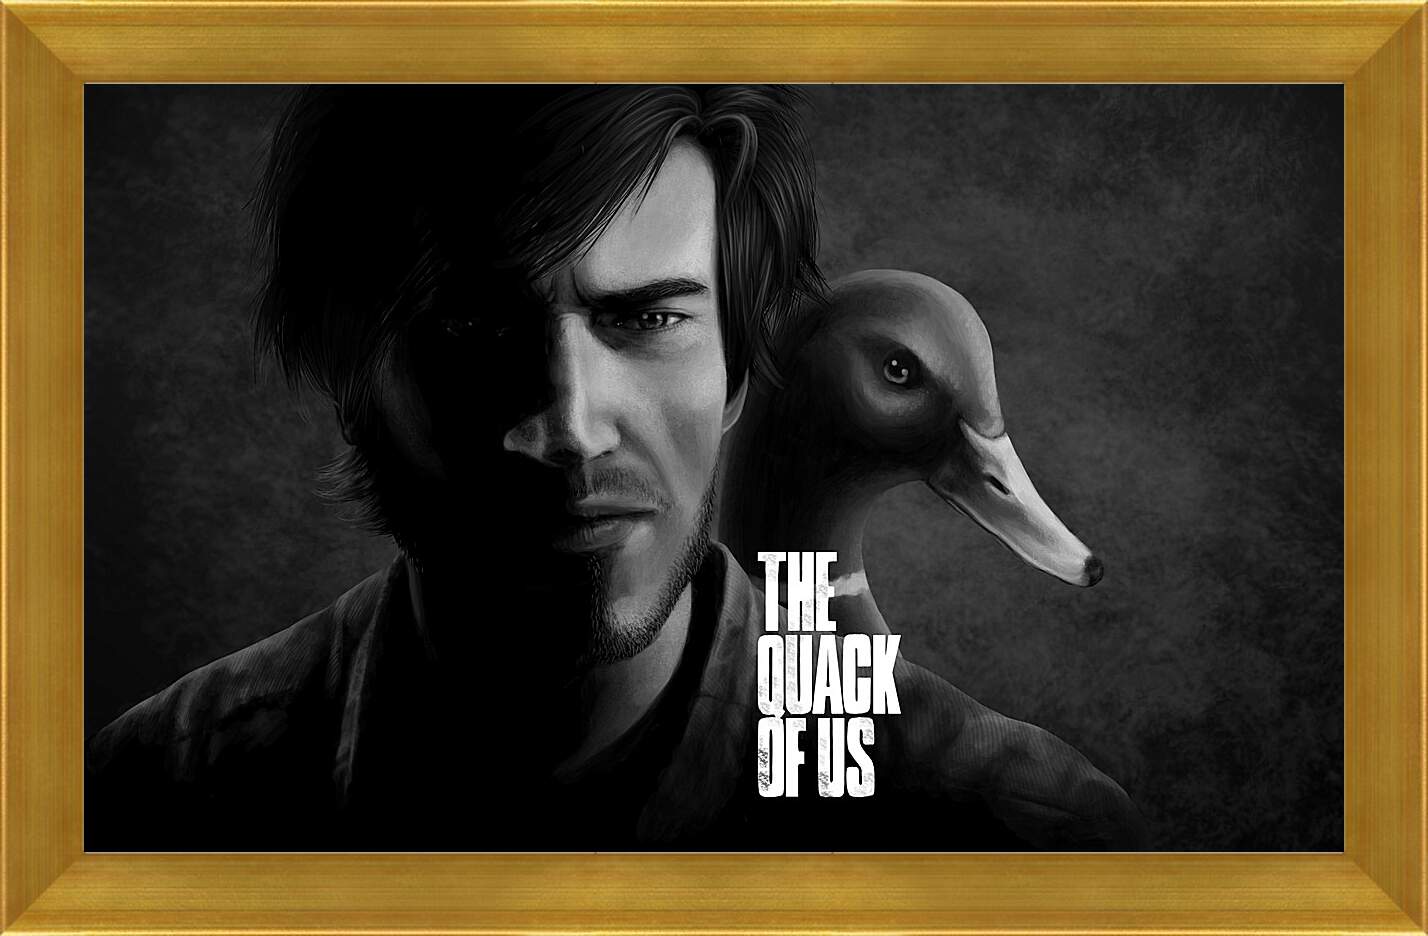 Картина в раме - The Last Of Us
